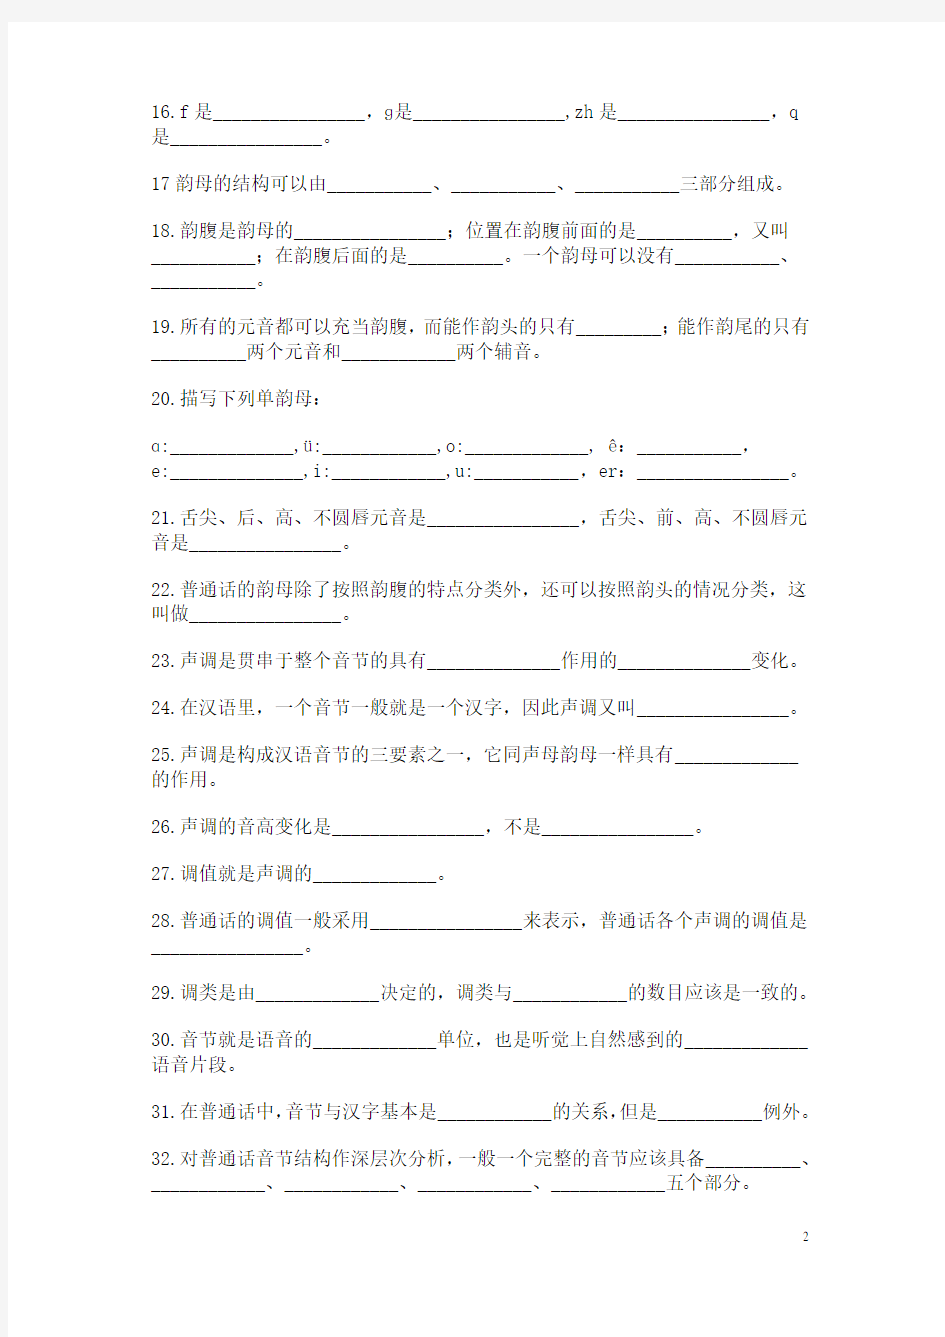 (完整版)现代汉语语音填空、选择练习题及答案